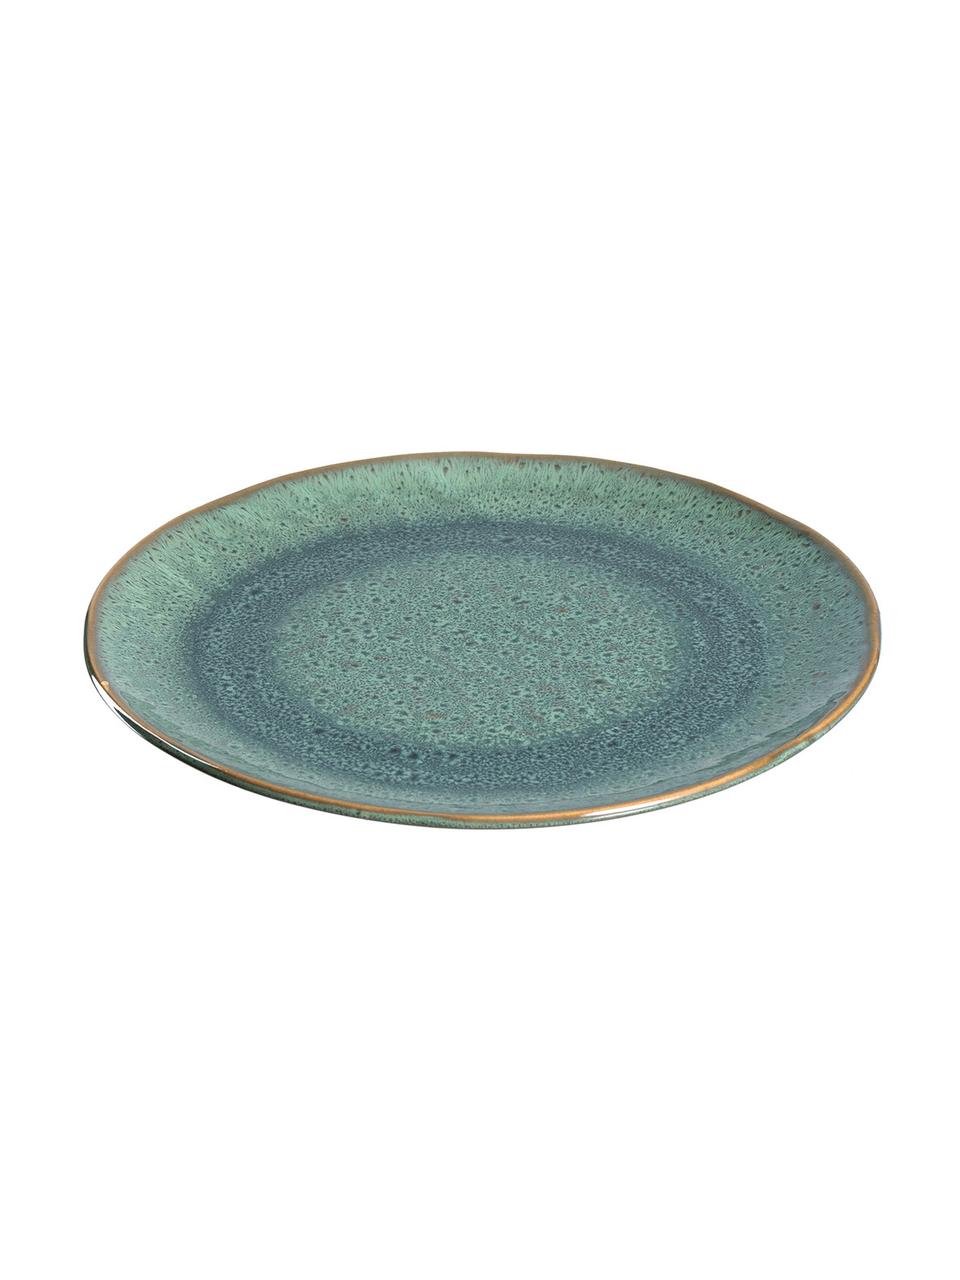 Snídaňový talíř s barevným přechodem a hrbolky Matera, 6 ks, Keramika, Zelená, Ø 23 cm, V 2 cm